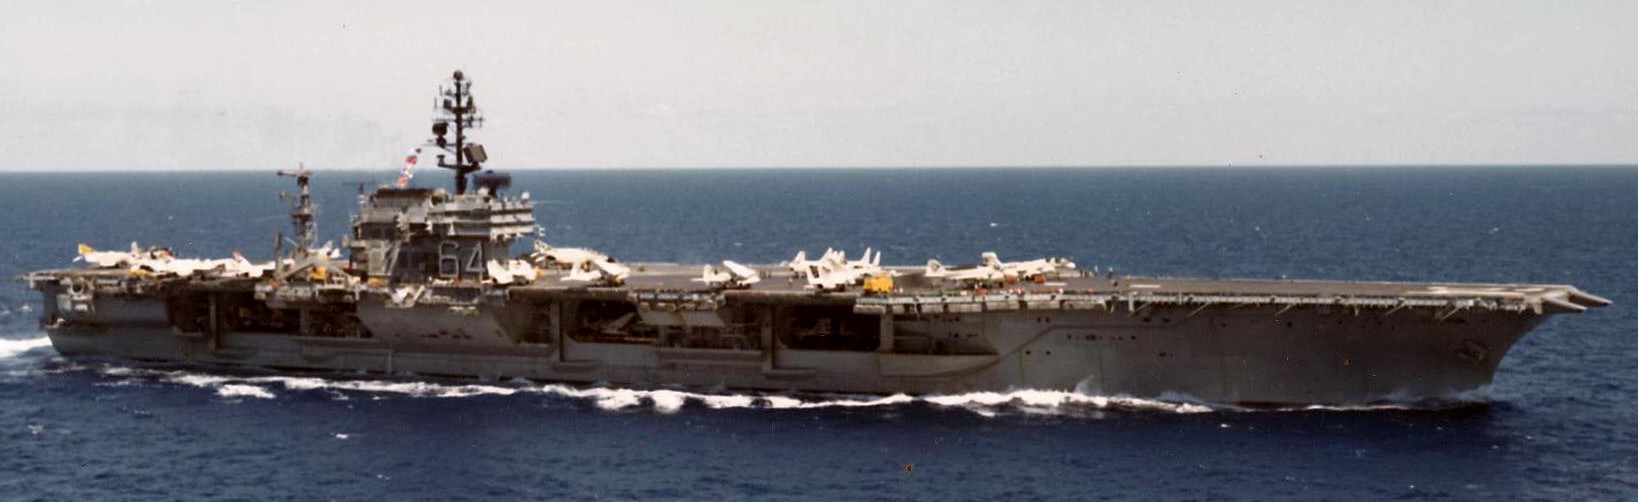 cv-64 uss constellation kitty hawk class aircraft carrier air wing cvw-9 us navy gulf tonkin 1973 42